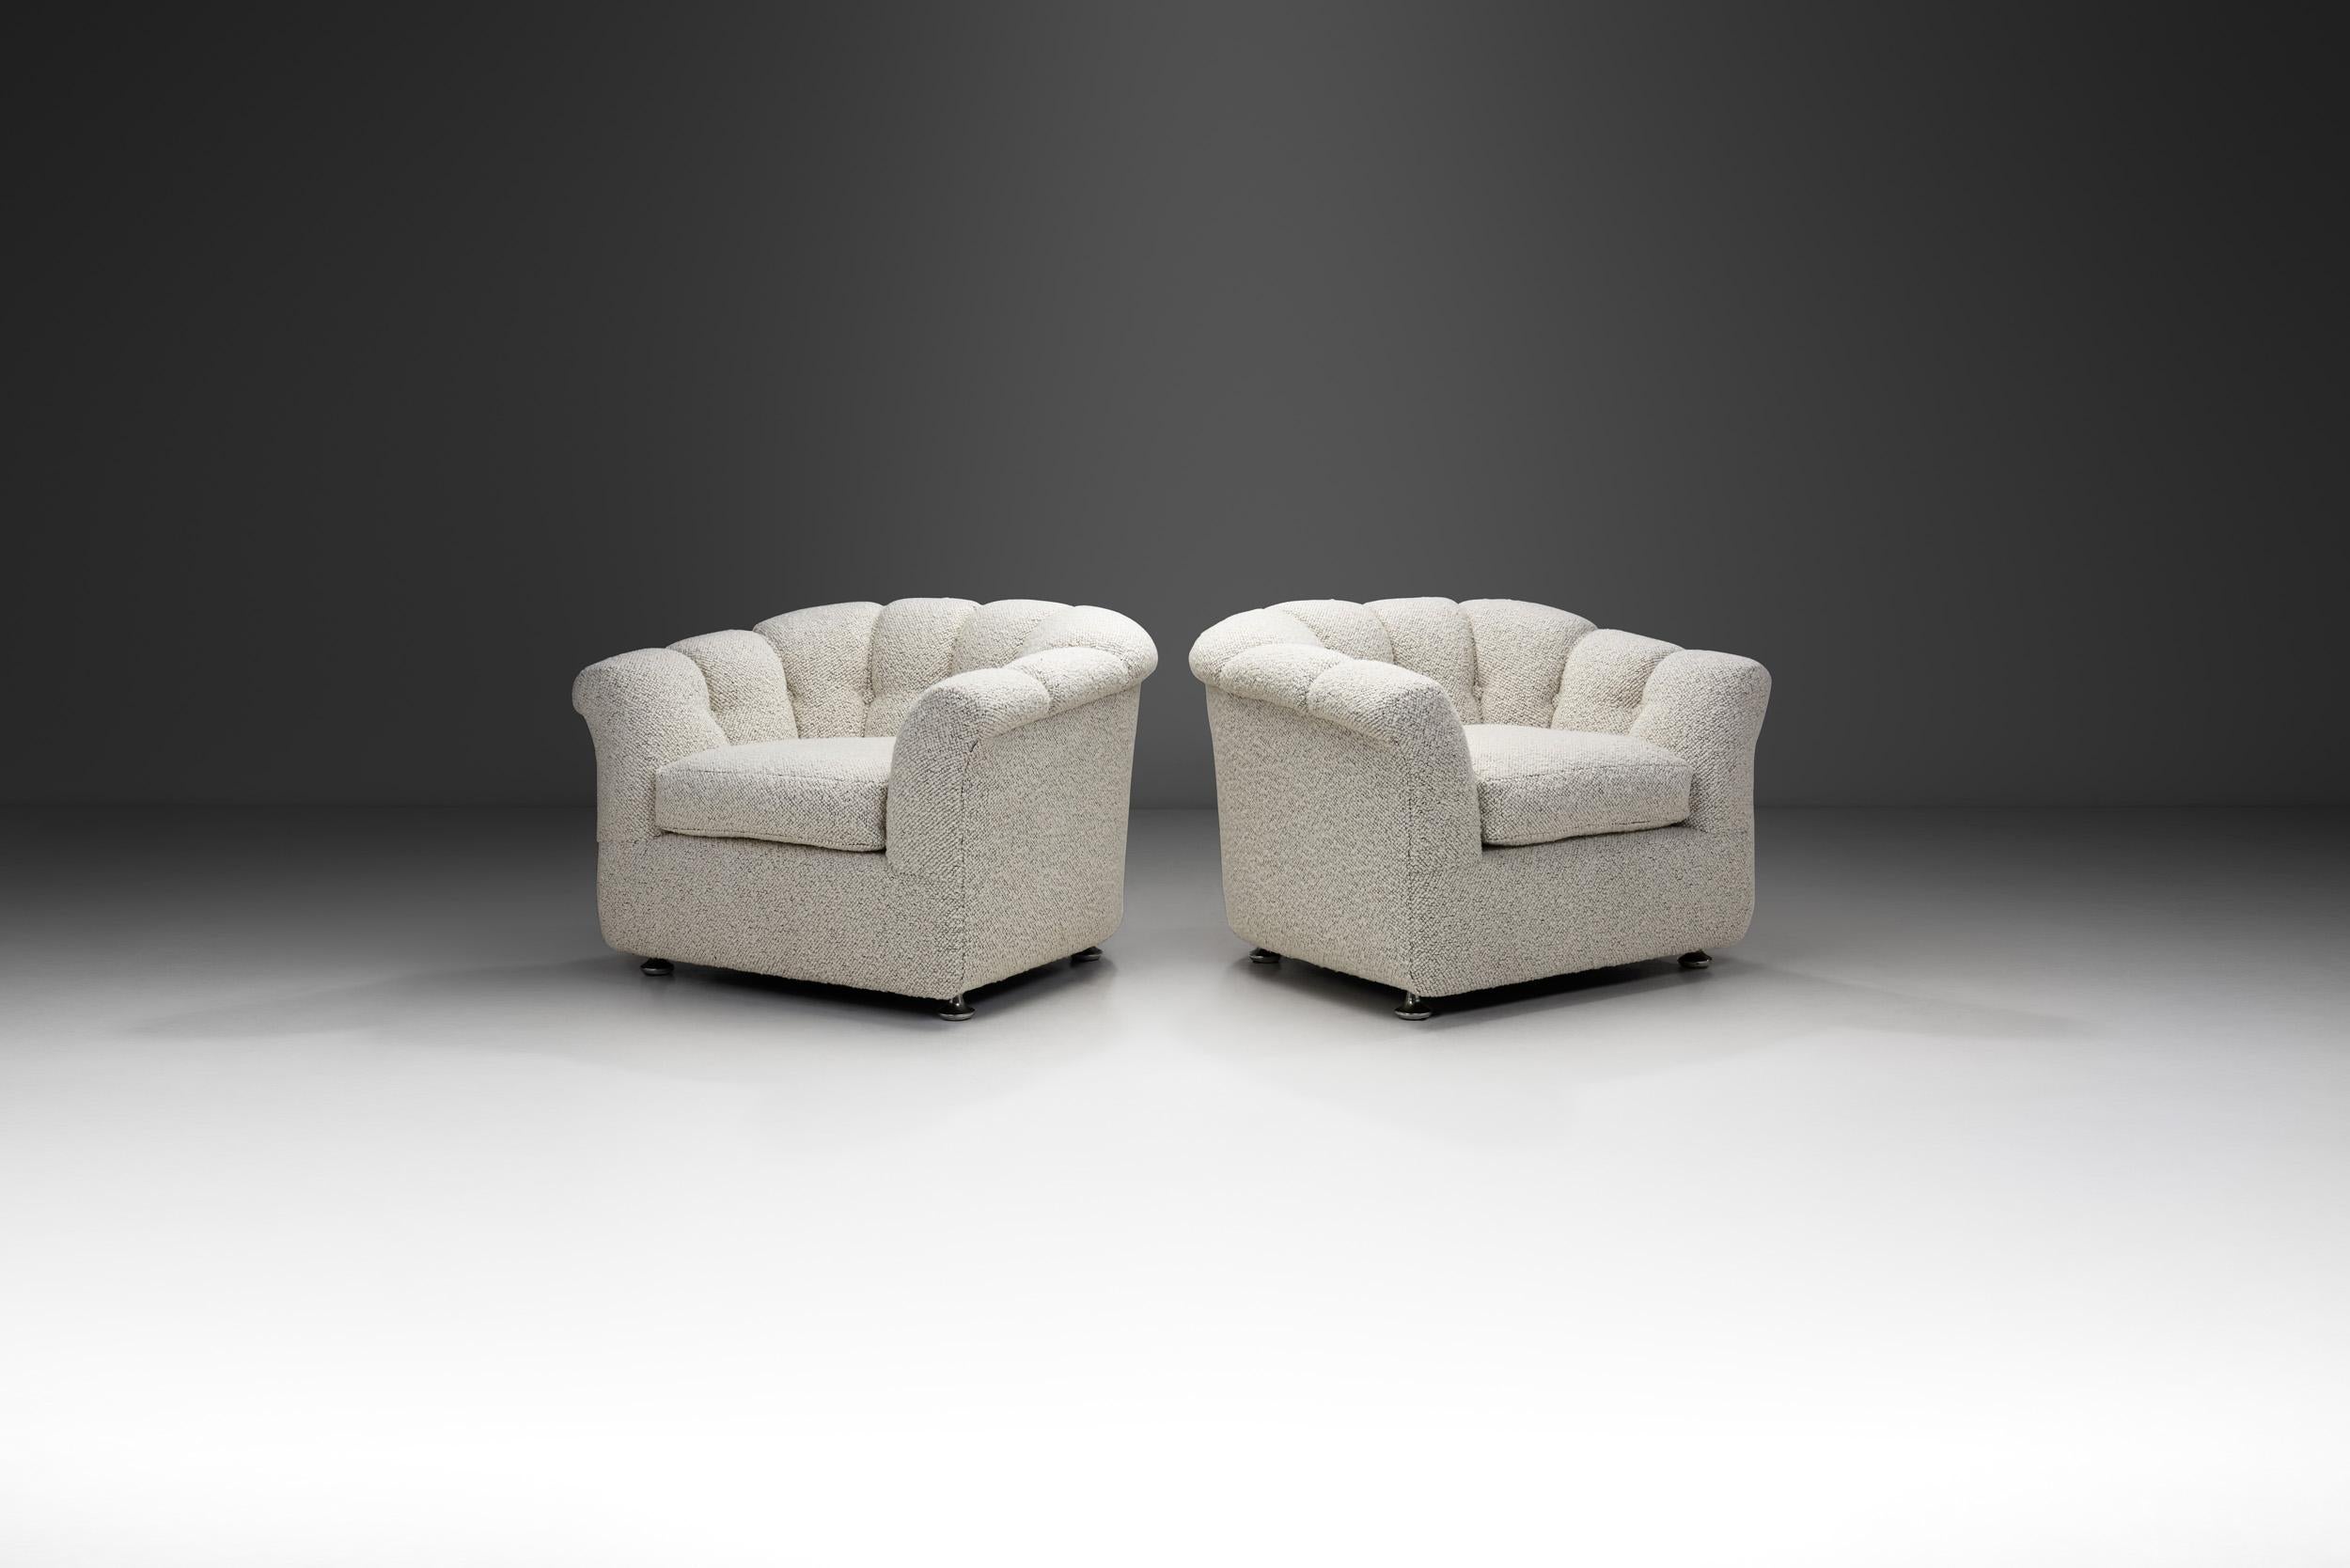 Cette paire de fauteuils club des années 1970 est un mélange captivant d'influences de design intemporelles. Entièrement revêtues d'un luxueux tissu bouclé blanc, ces chaises incarnent l'essence même du confort et du style. Leur corps festonné